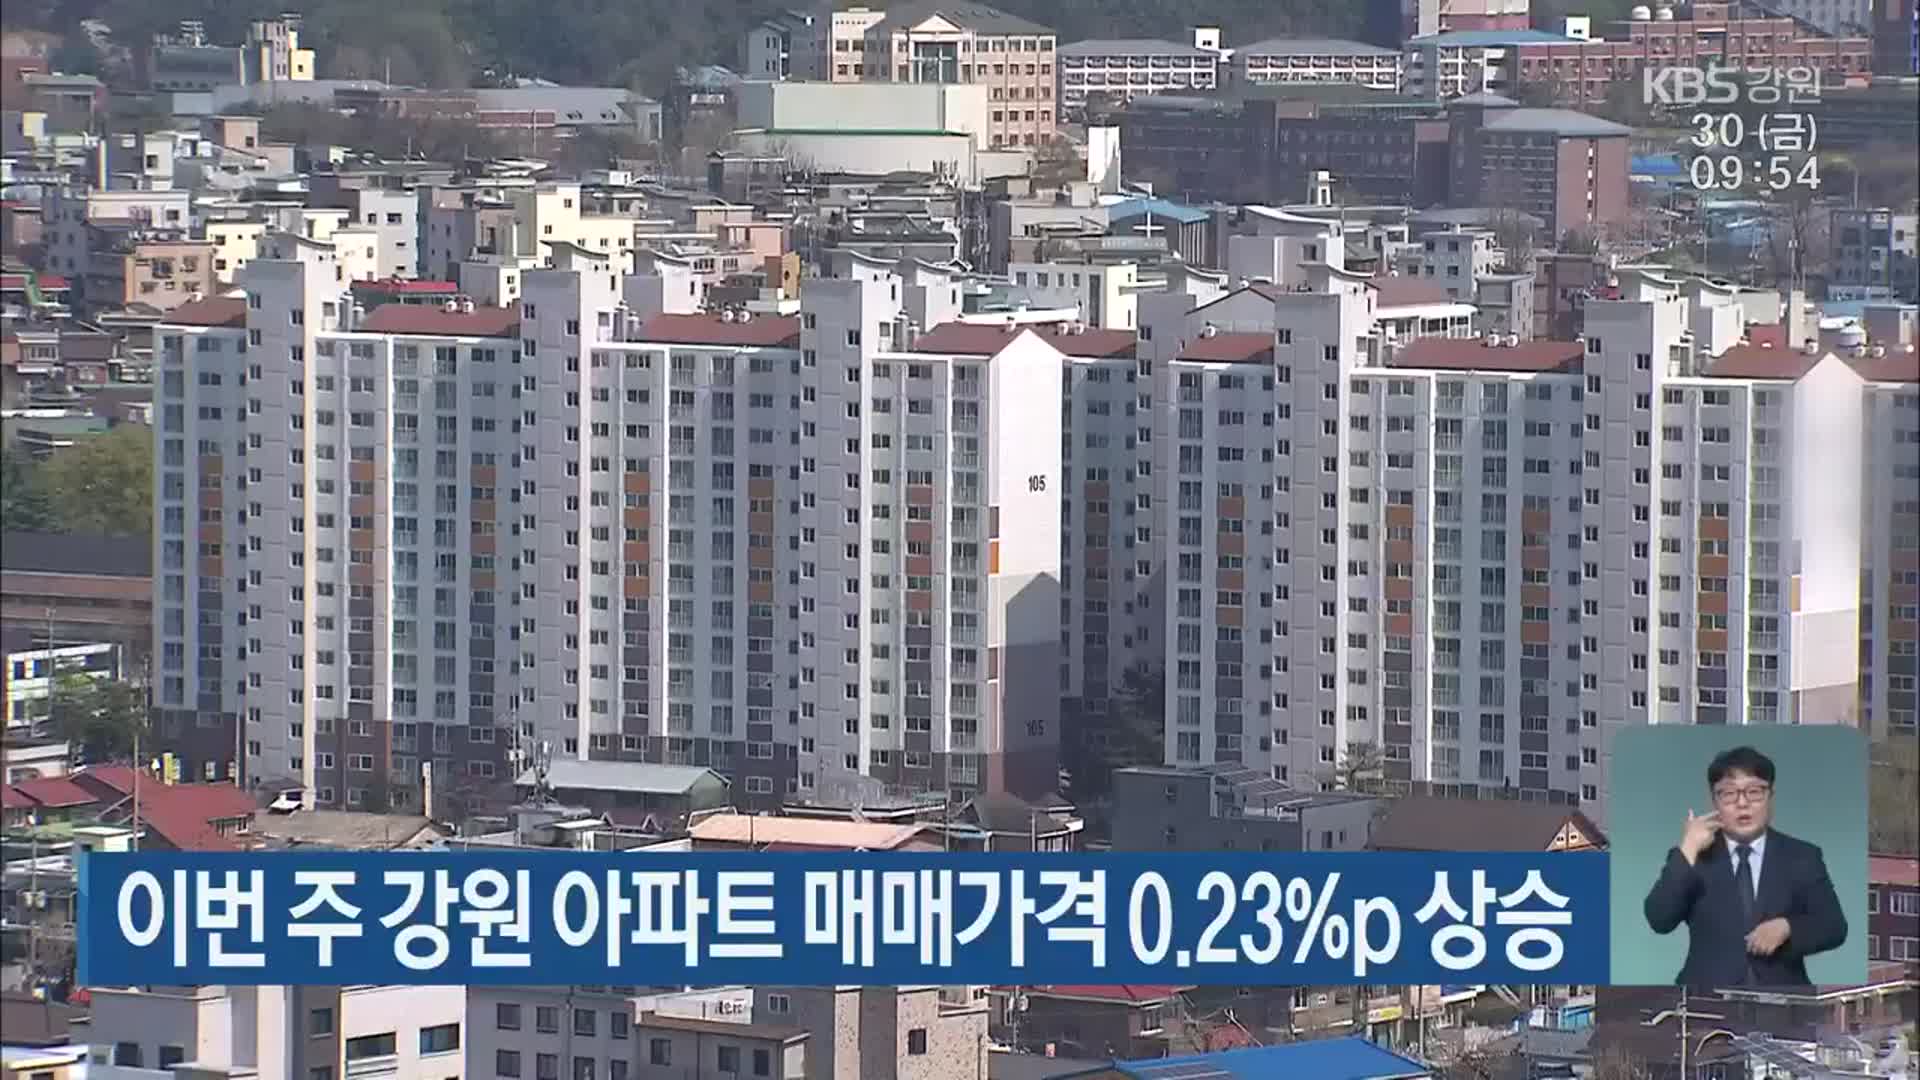 이번 주 강원 아파트 매매가격 0.23%p 상승